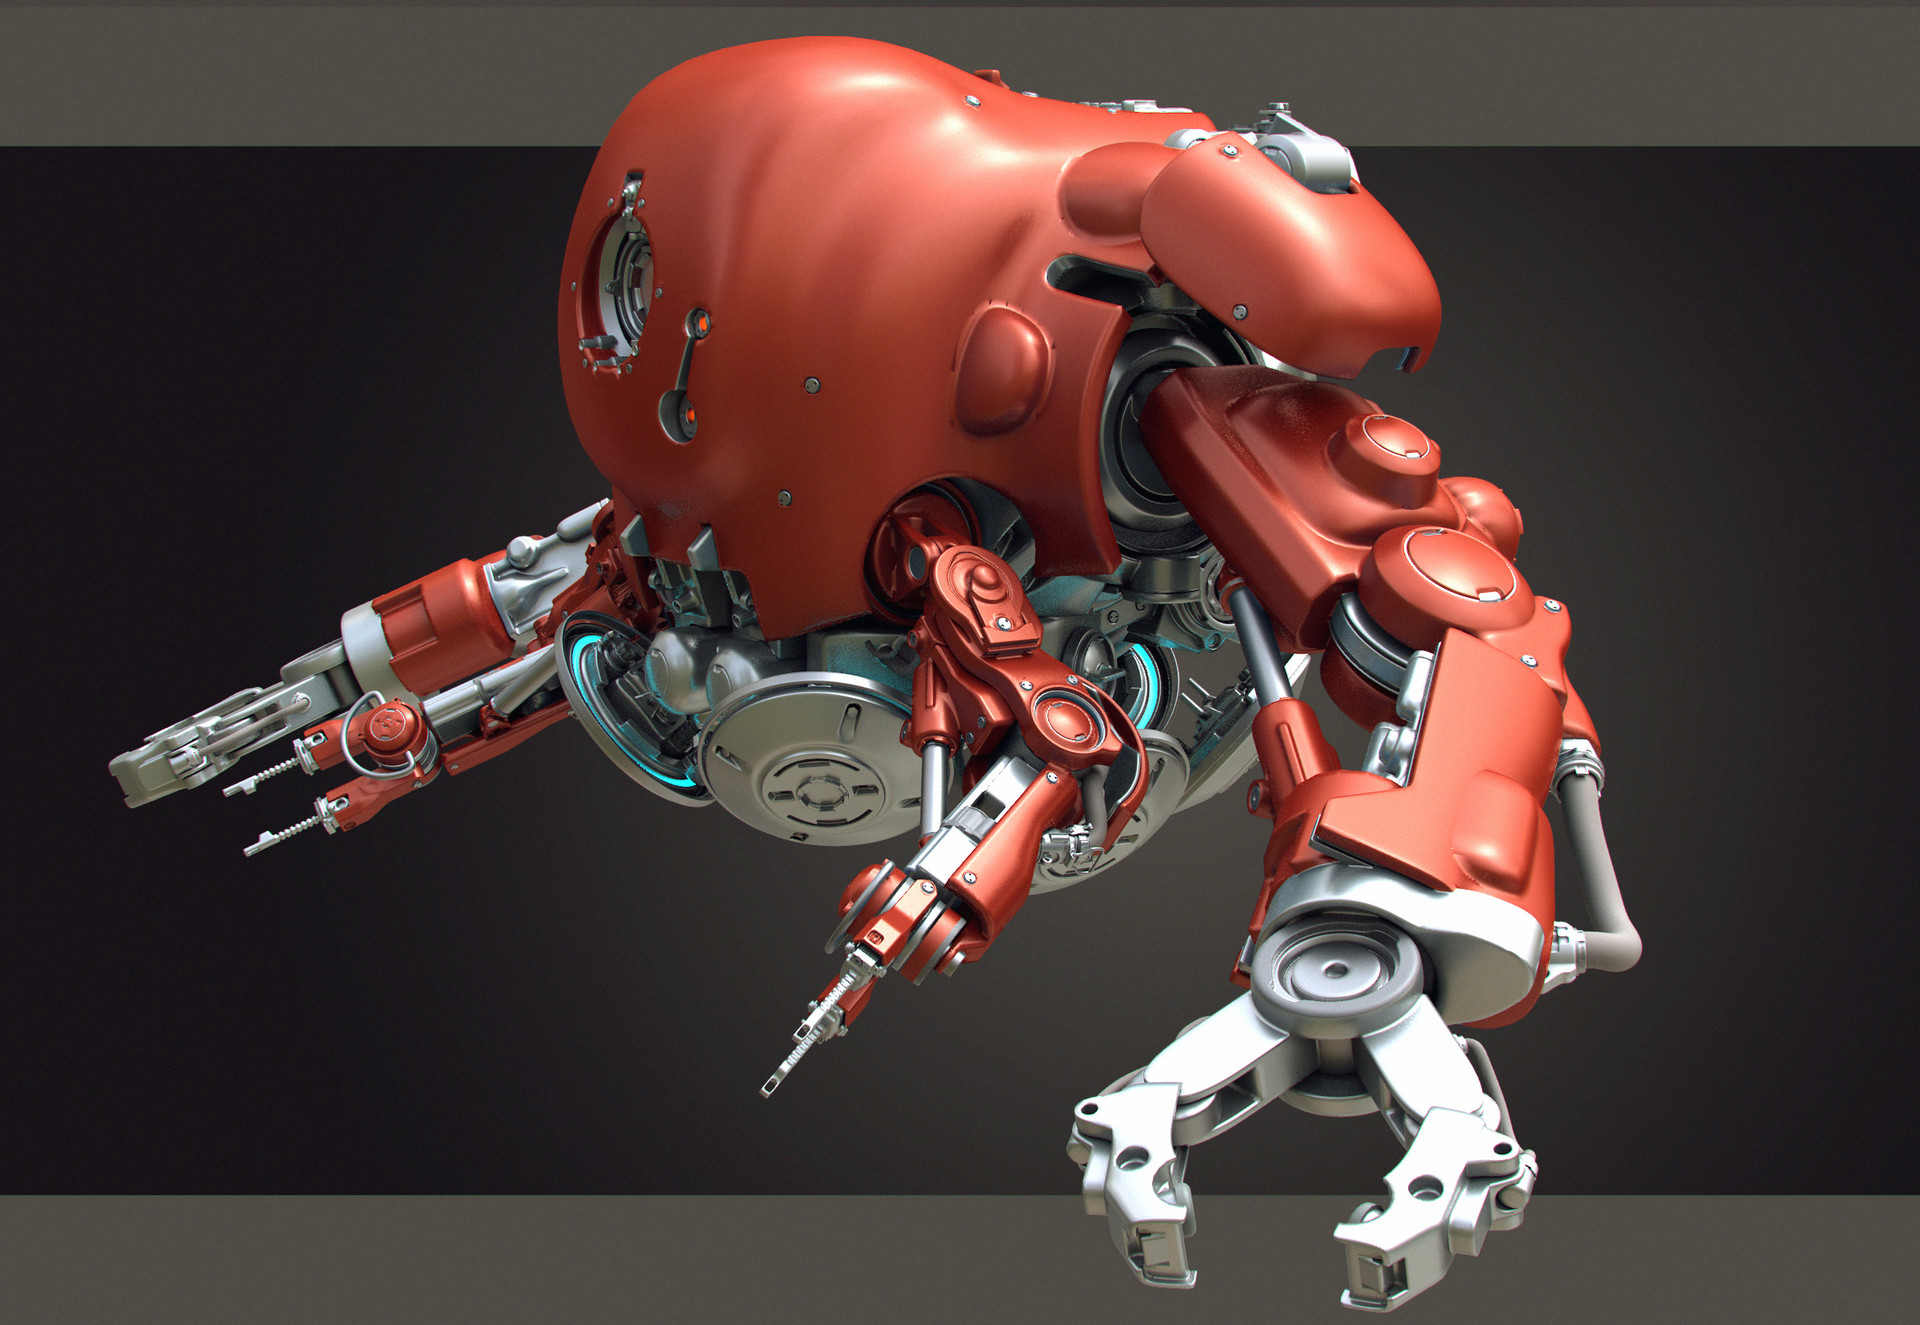 tor-frick-robot1-01b.jpg?1496356042